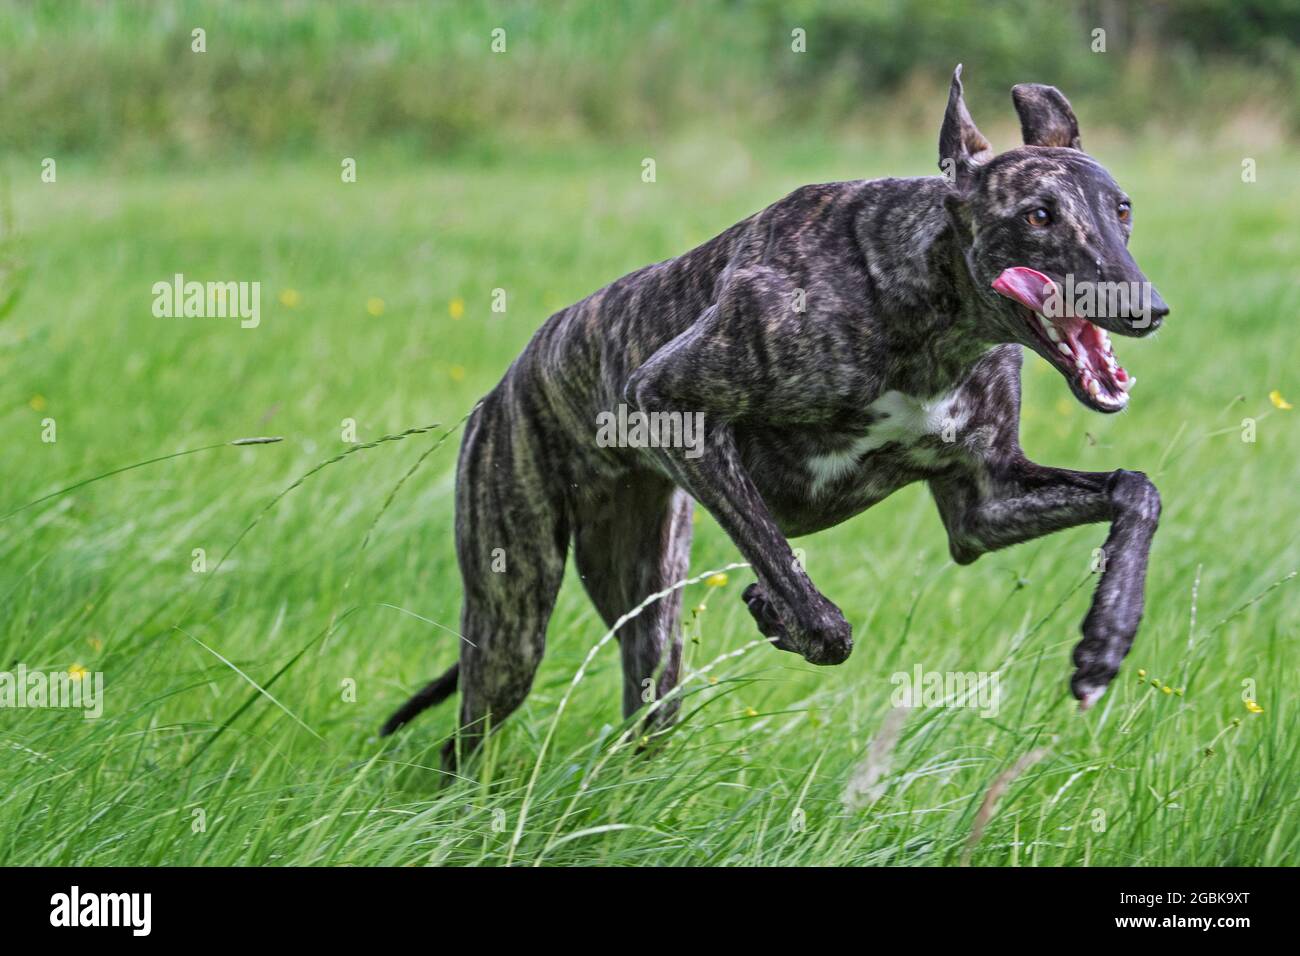 Galgo Español à revêtement brut brindiqué / galgo espagnol barcino / atigrado Spatithound espagnol, chien race des soupirs courant dans le champ Banque D'Images